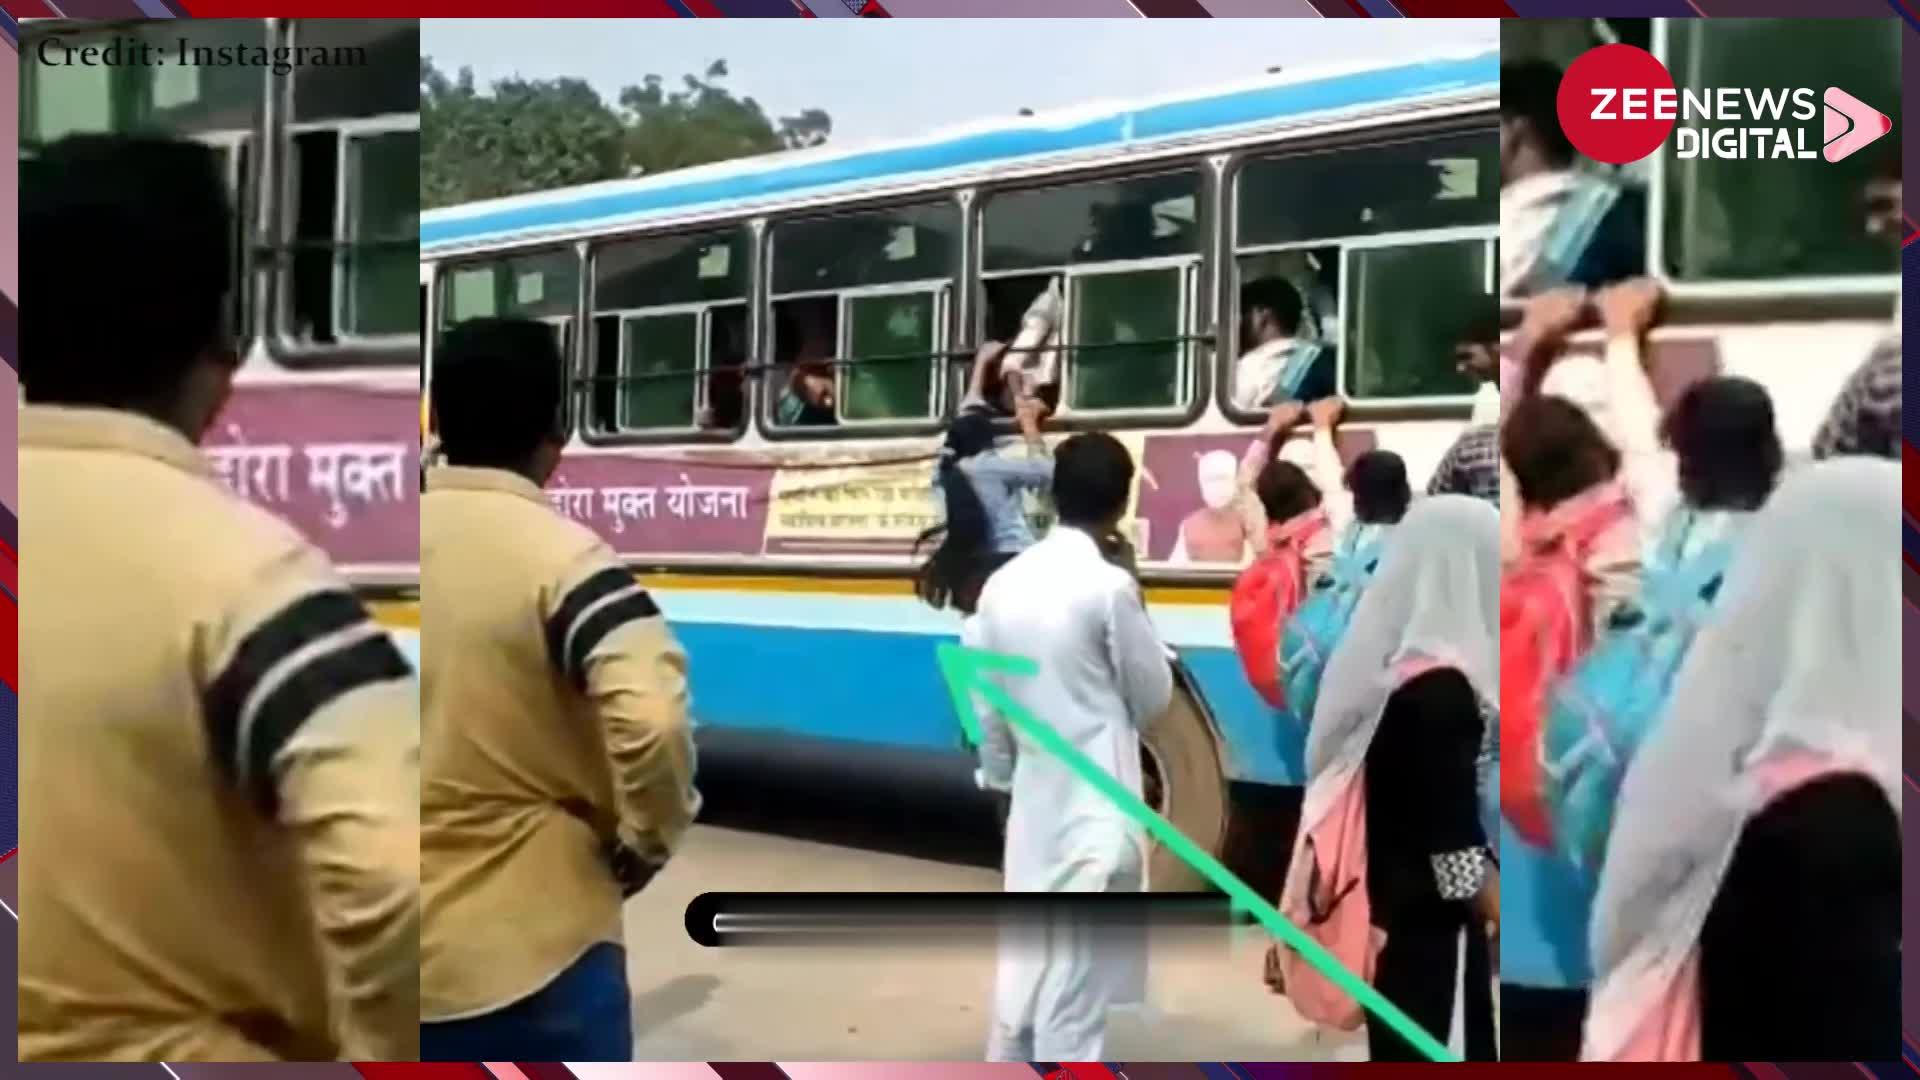 हरियाणा की चलती बस में जान जोखिम में डालकर खिड़की से चढ़ गई लड़की, देखें चौंकाने वाला वीडियो